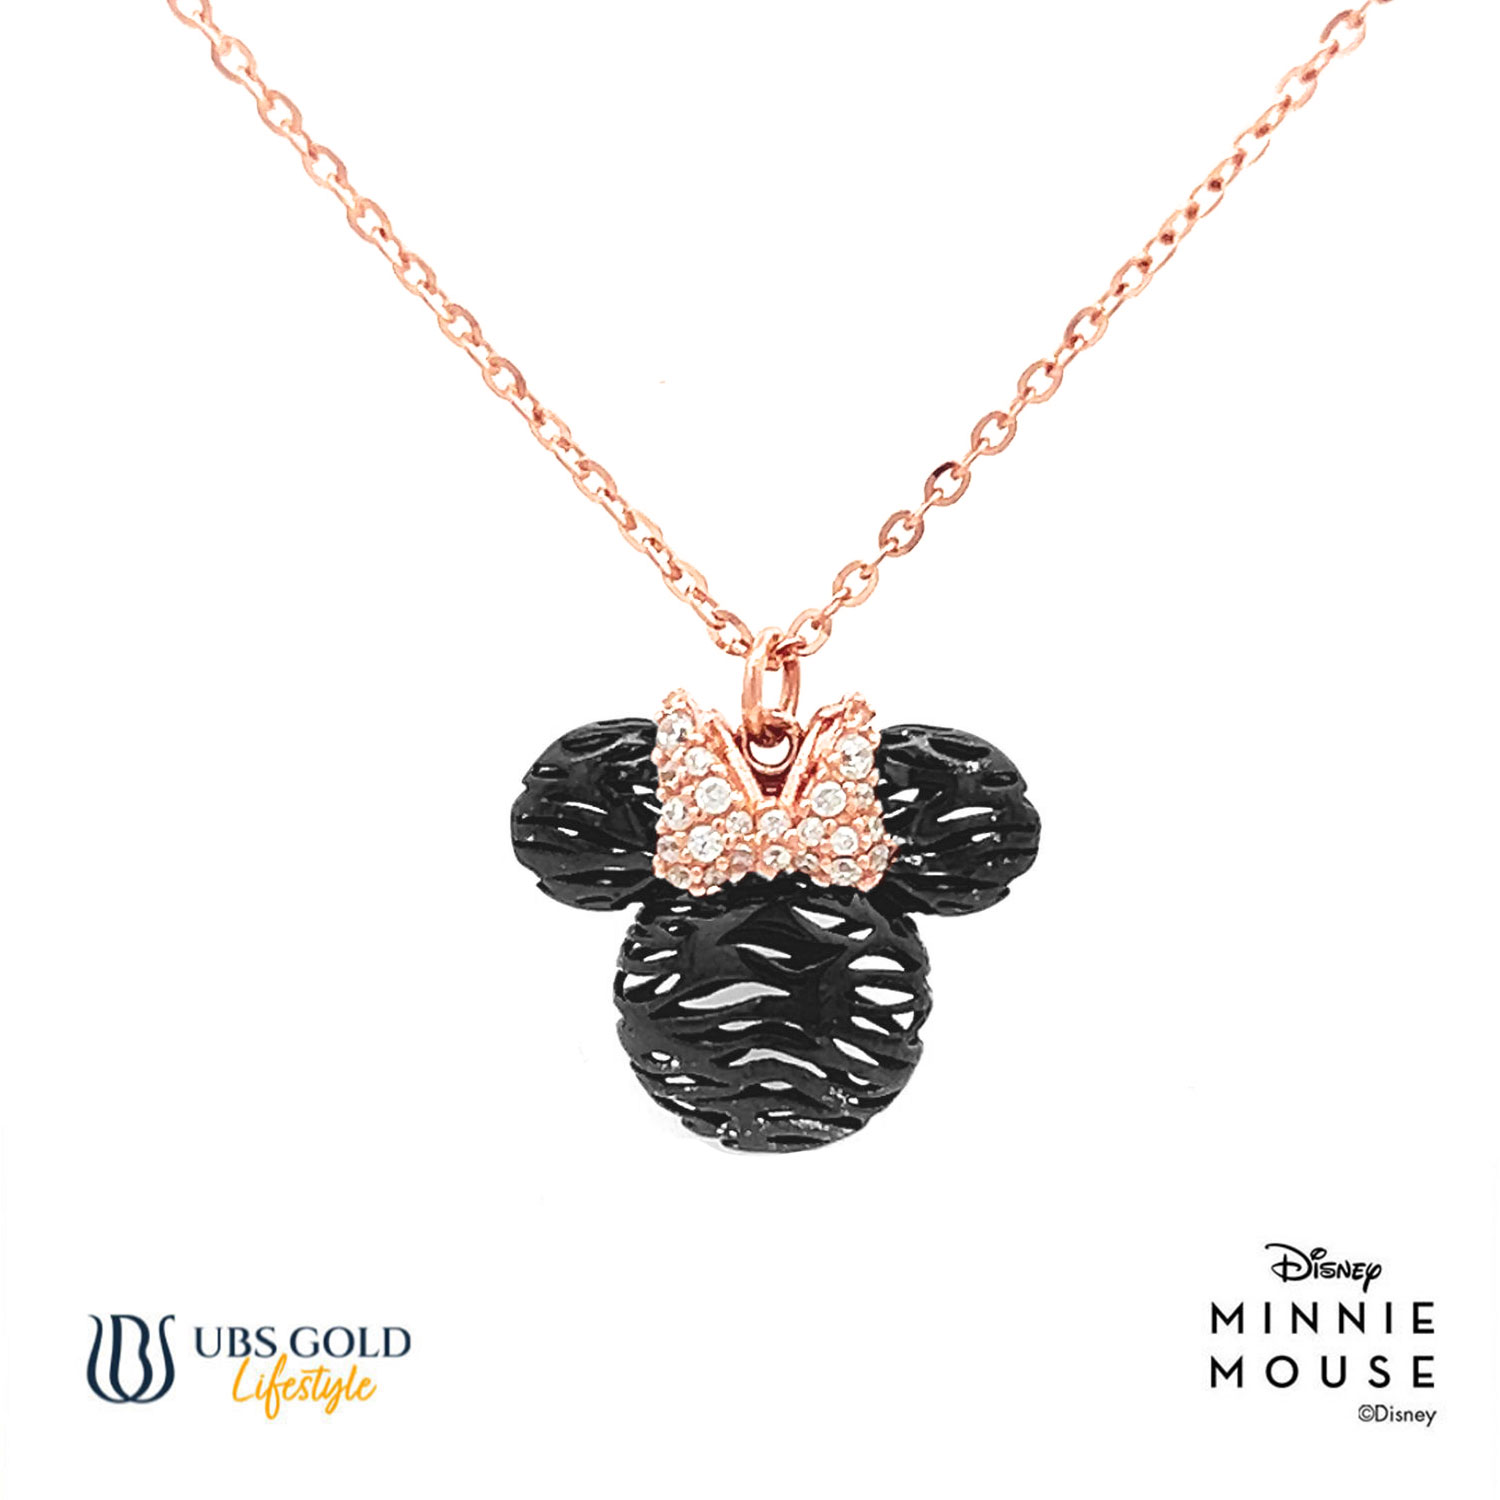 UBS Gold Kalung Emas Disney Minnie Mouse - Kky0469 - 17K